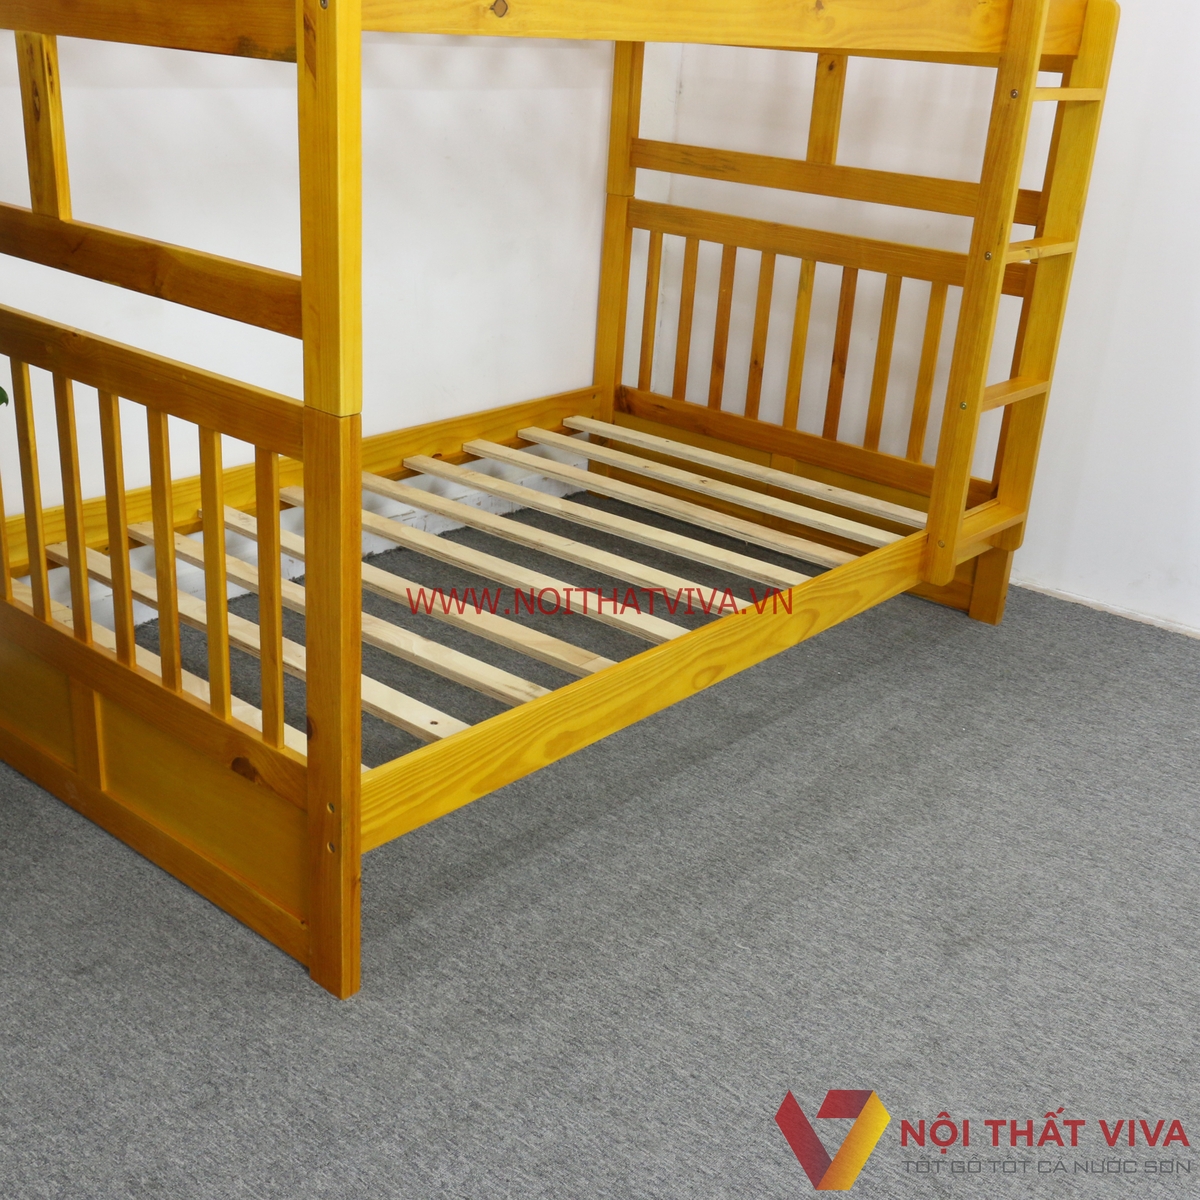 Giường tầng cho bé giá rẻ nhất TP HCM - Miễn phí vận chuyển nội thành